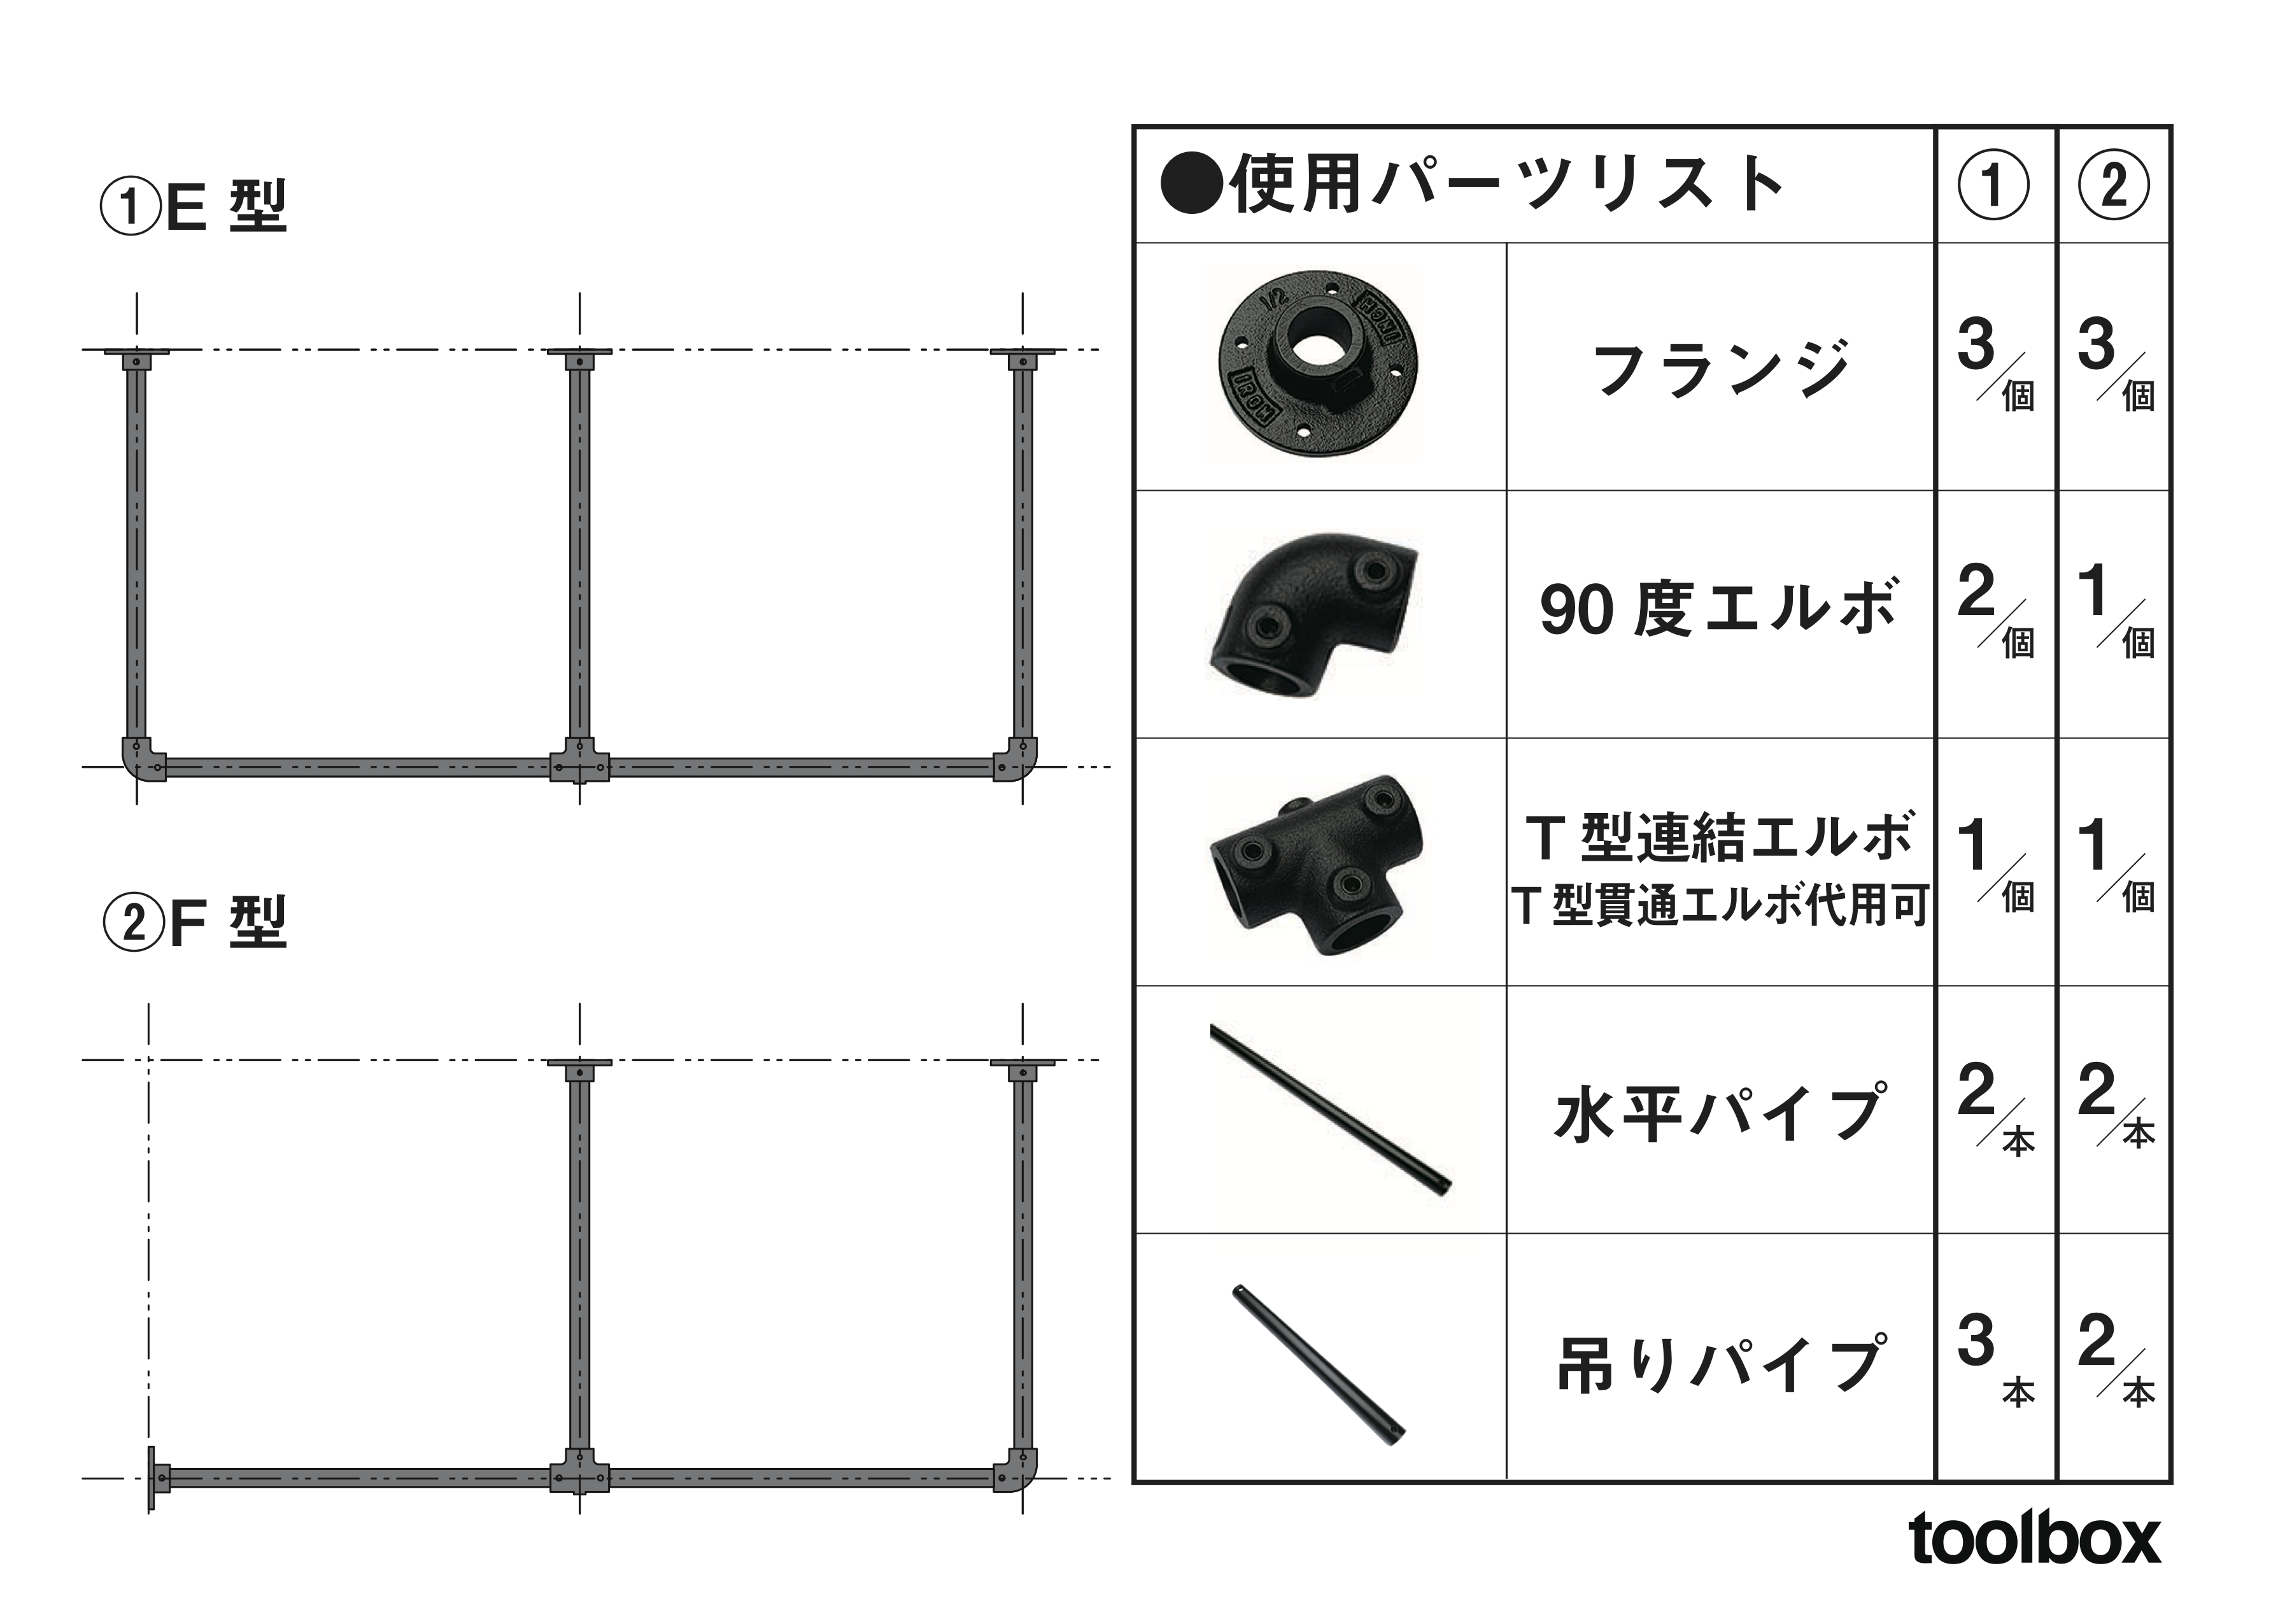 アイアンハンガーパイプ 吊りパイプ H500用 ブラック PS-HB008-31-G141 【E型・F型の組み合わせ例】 寸法詳細は資料ダウンロードをご参照ください